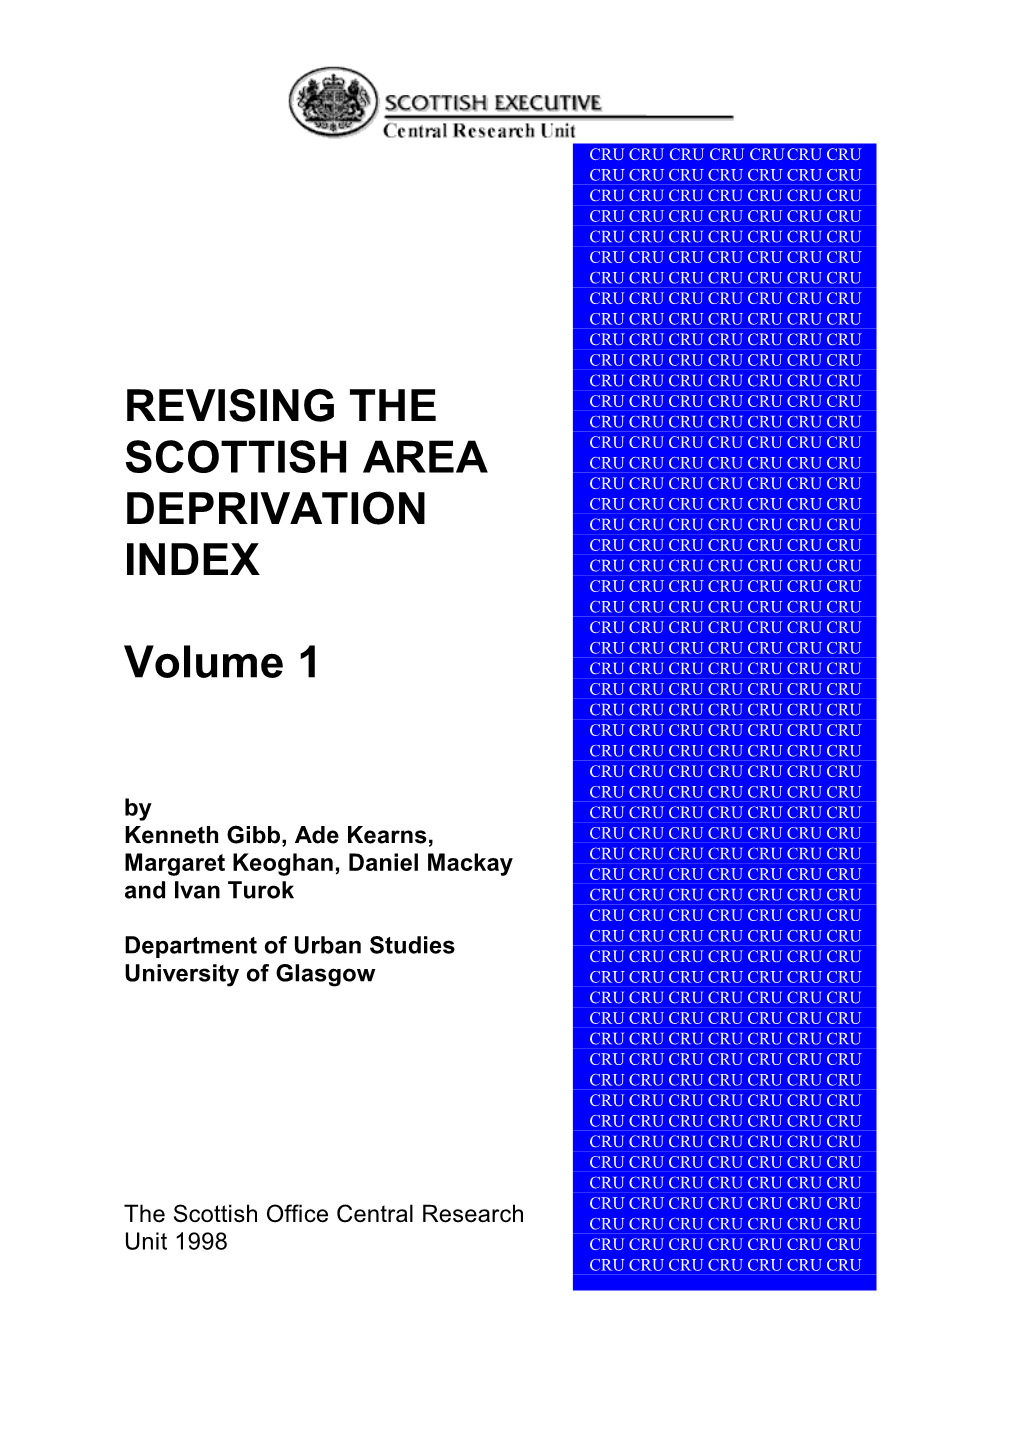 REVISING the SCOTTISH AREA DEPRIVATION INDEX Volume 1